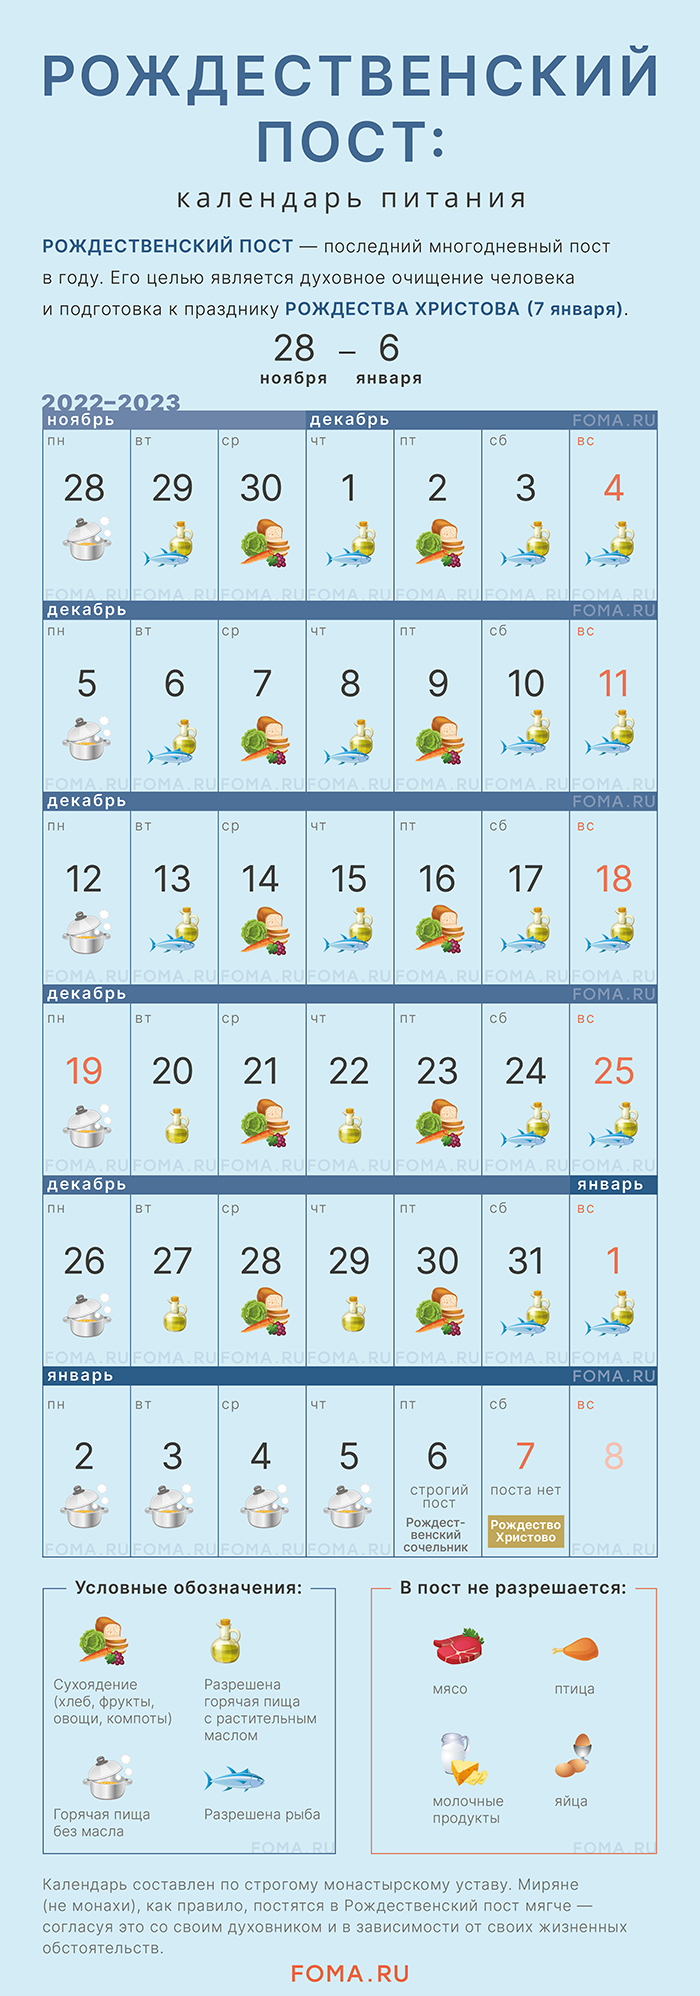 постный календарь на 2023 год православный